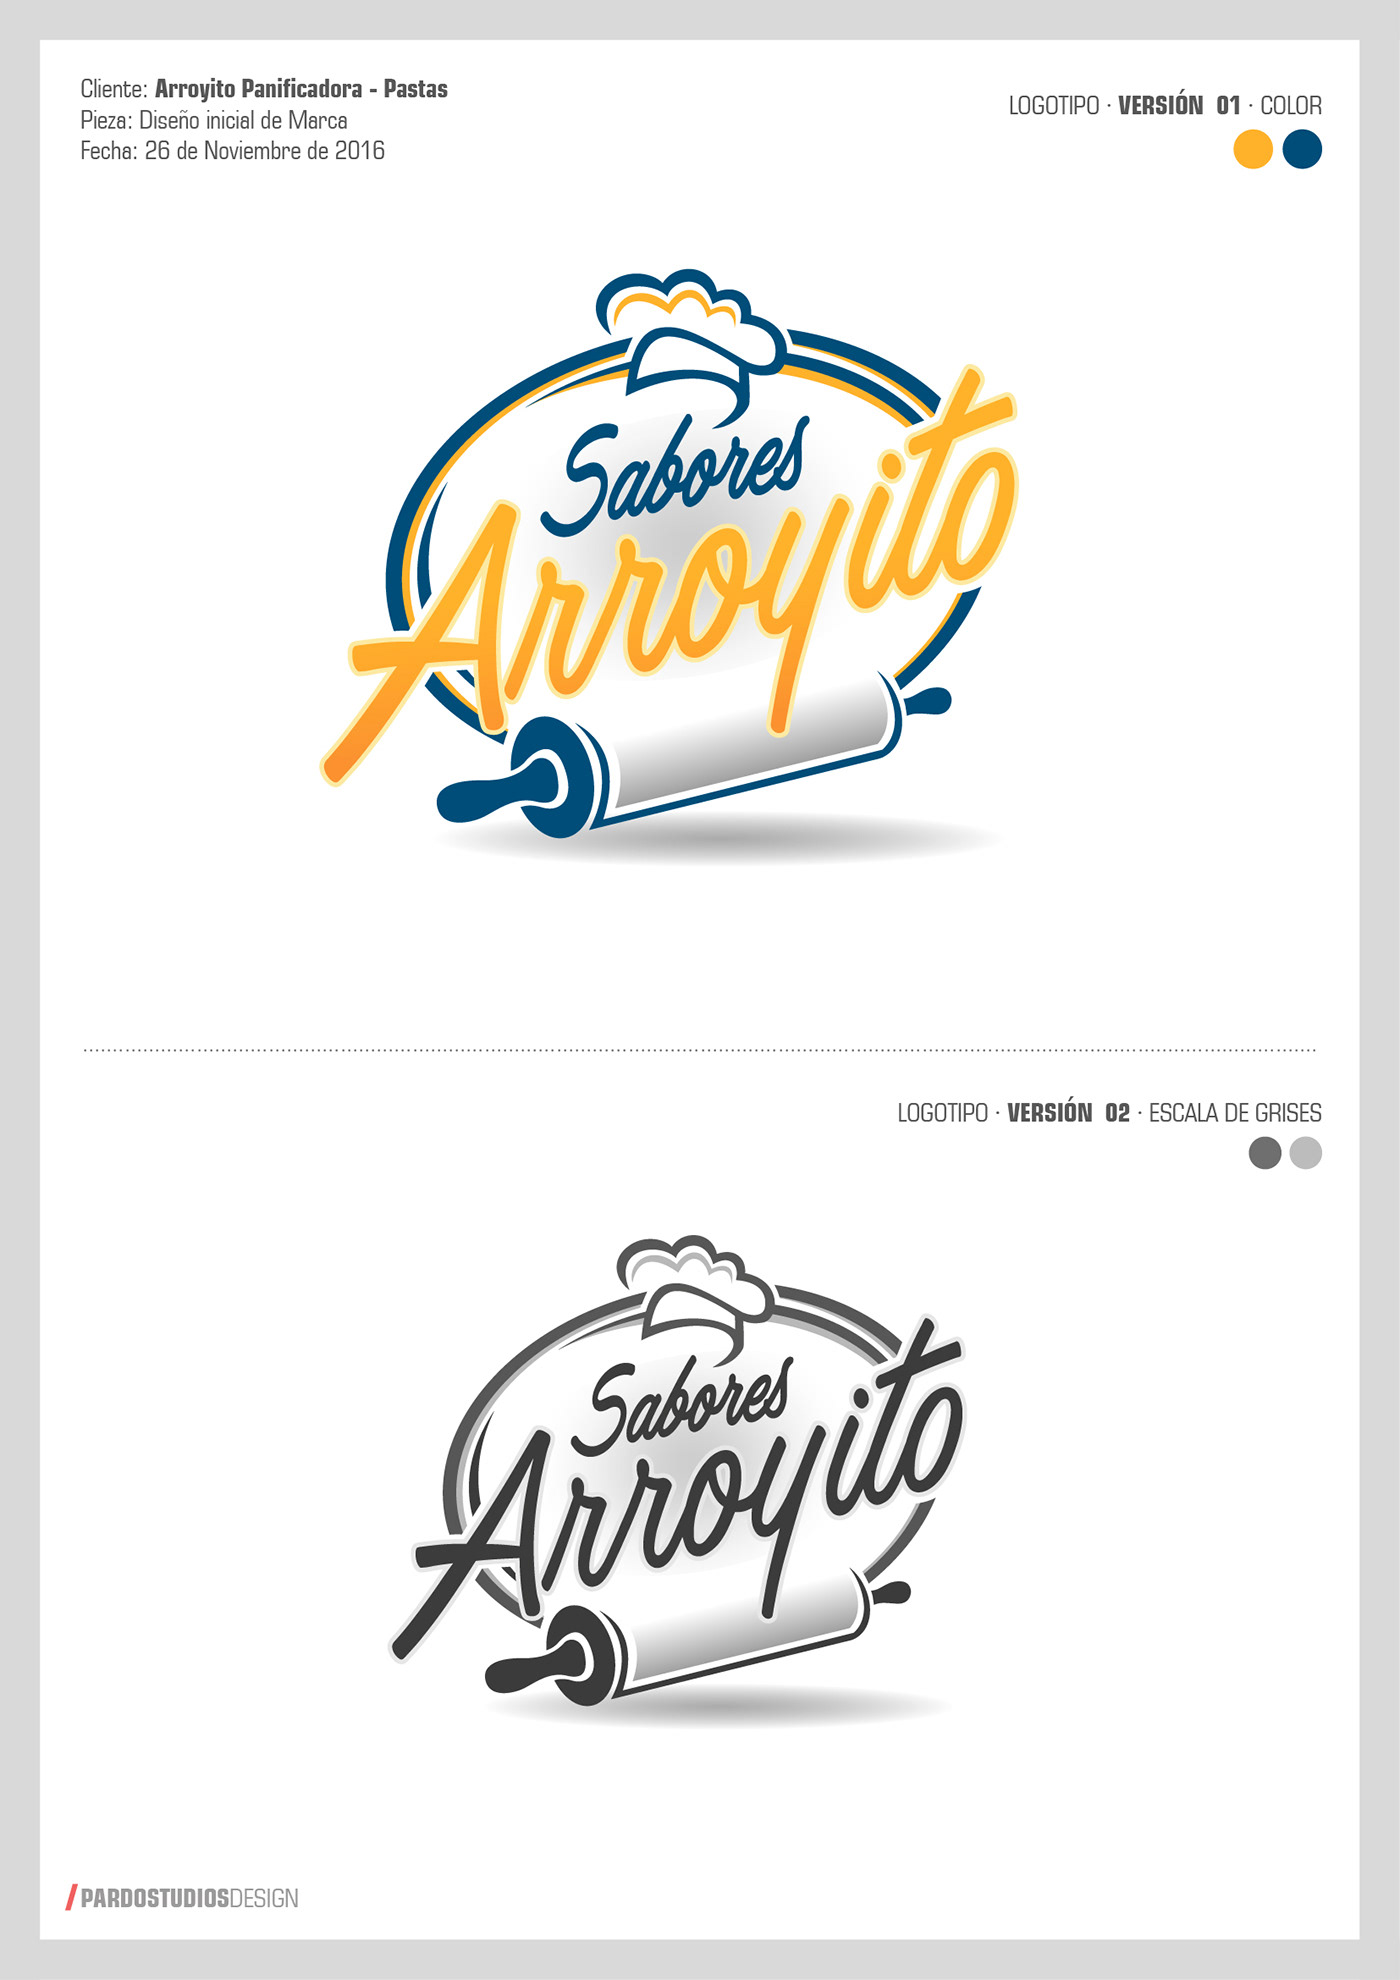 arroyito branding  diseño de marca logo Logotipo Packaging sistema visual